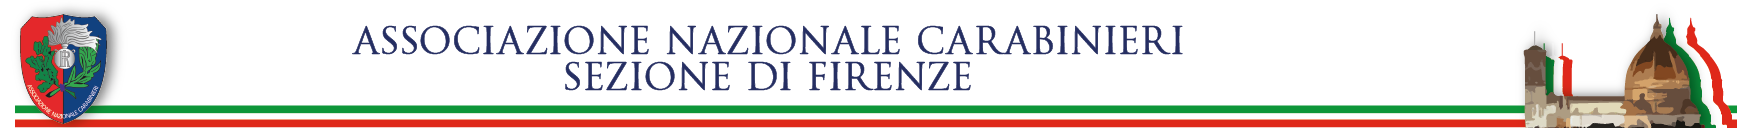 Associazione Nazionale Carabinieri Firenze Logo